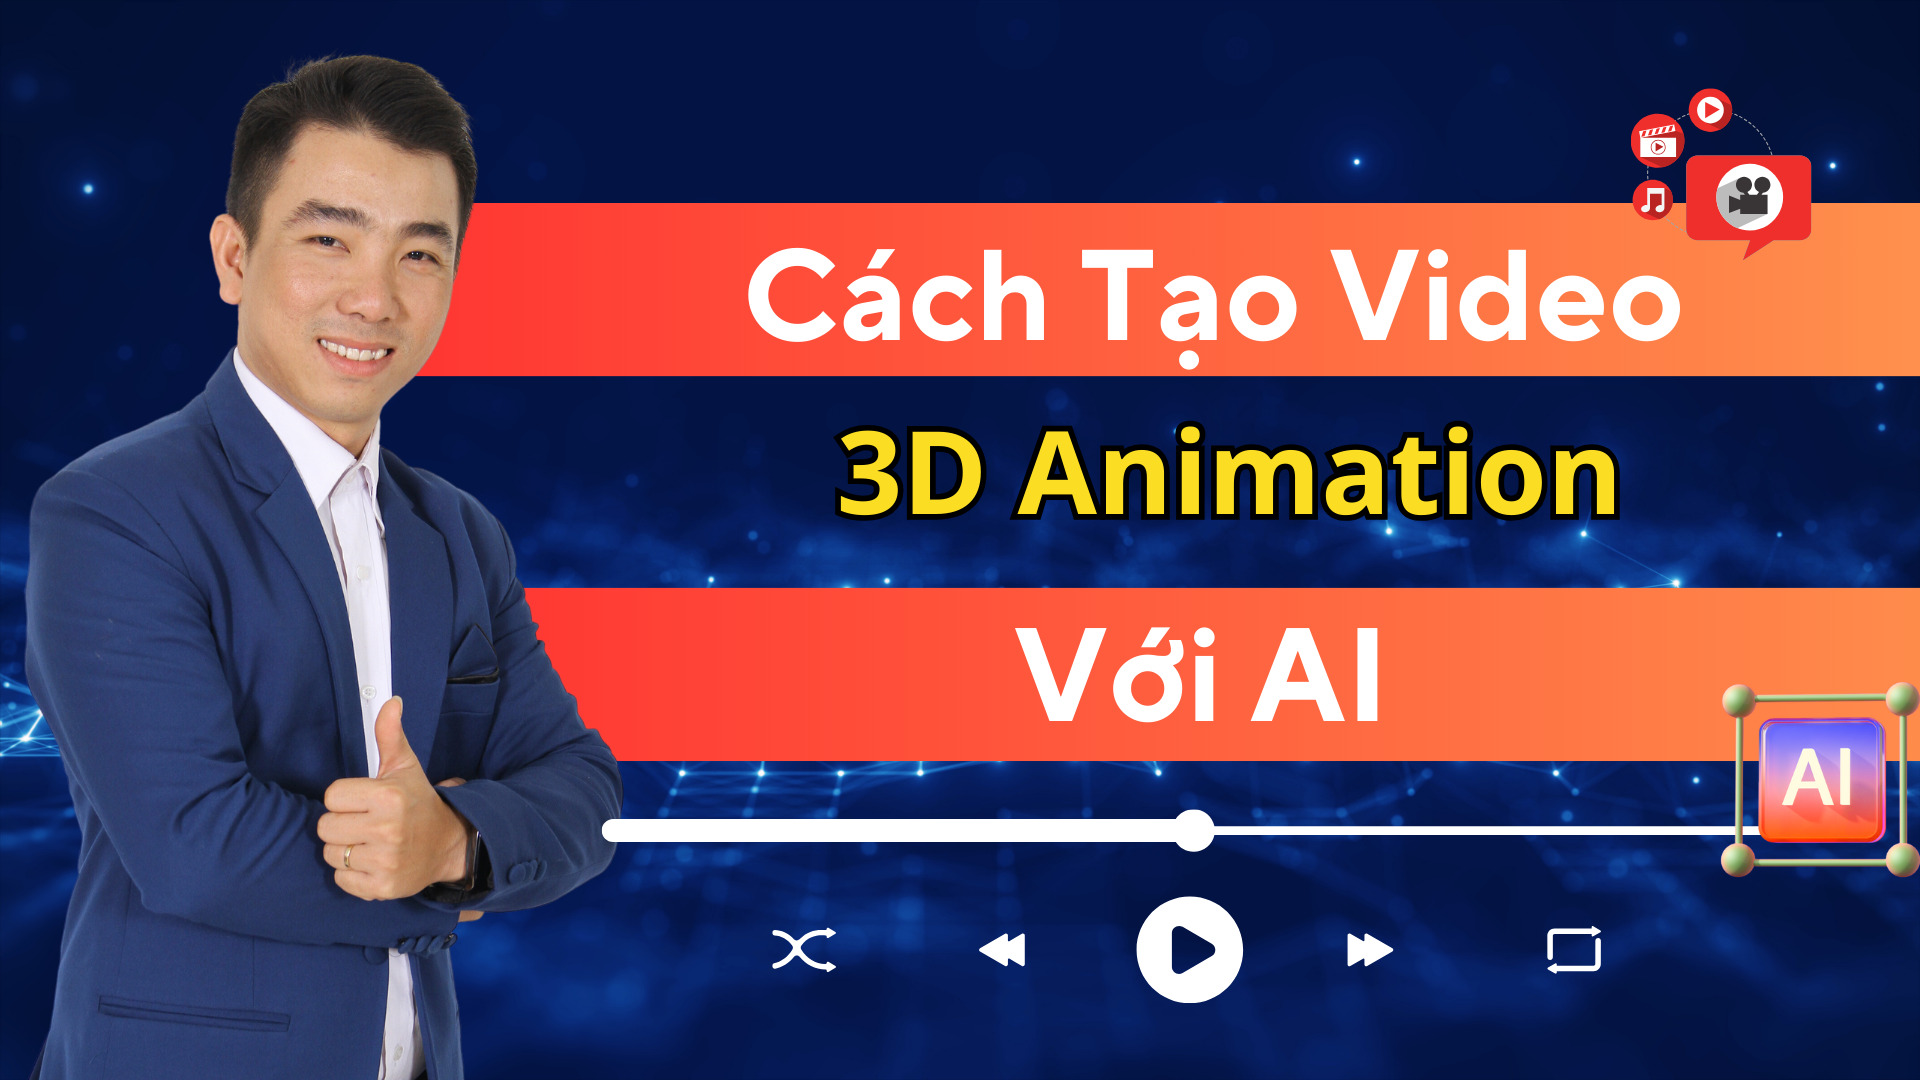 Cách Tạo Video 3D Animation với AI